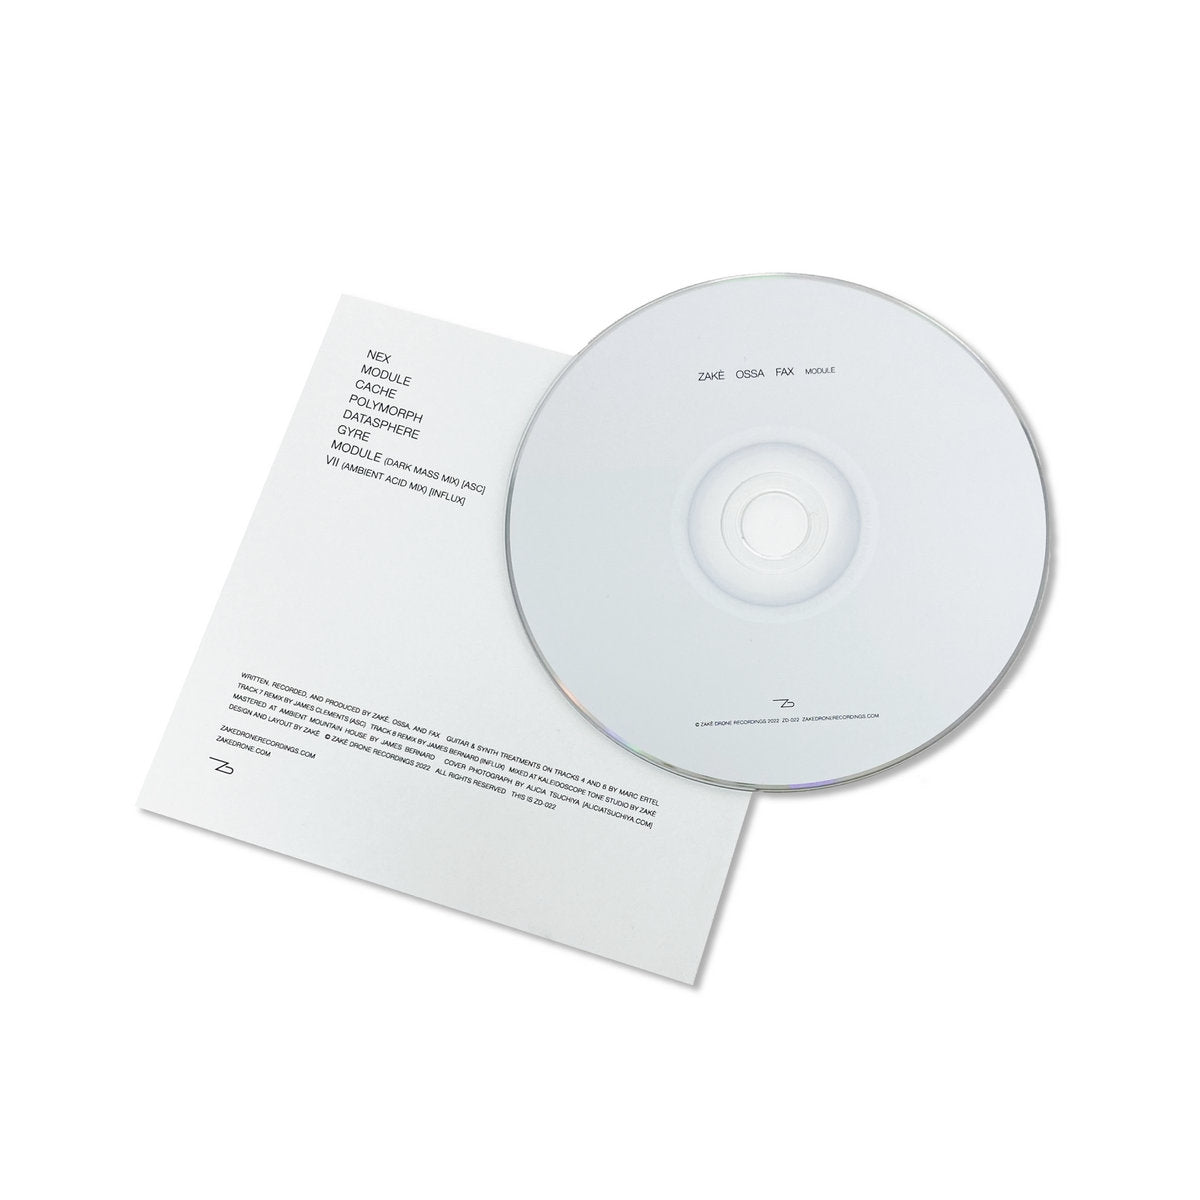 zakè, Ossa, Fax 'Module' [CD]